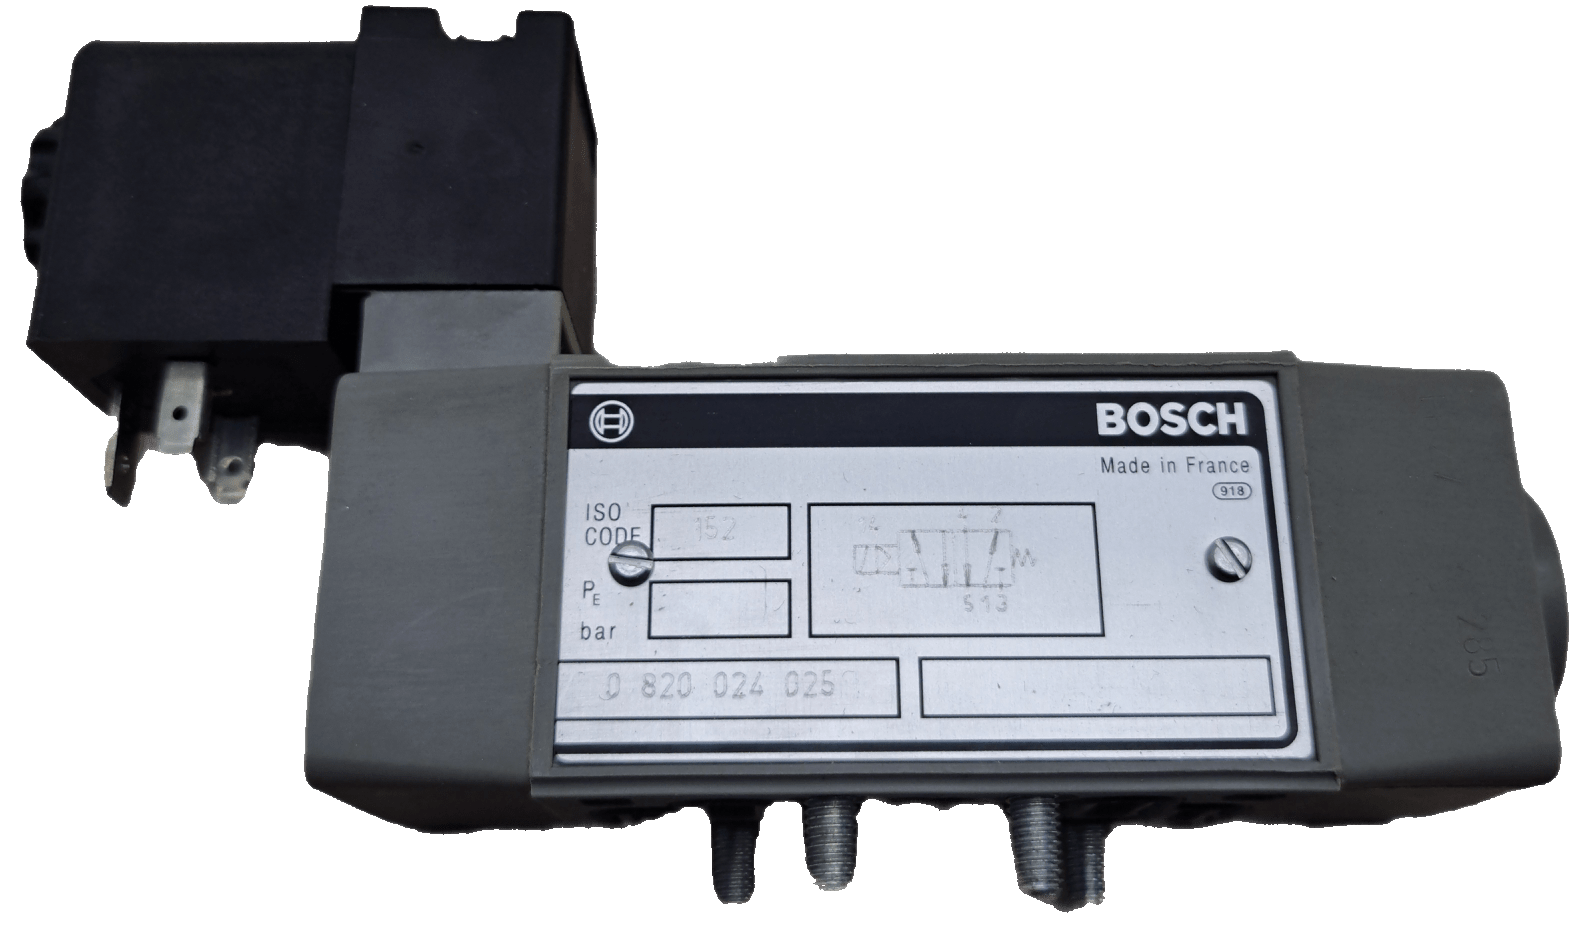 Bosch / Aventics 5/2-Wegeventil, Größe 1 / 0820024025 - #product_category# | Klenk Maschinenhandel